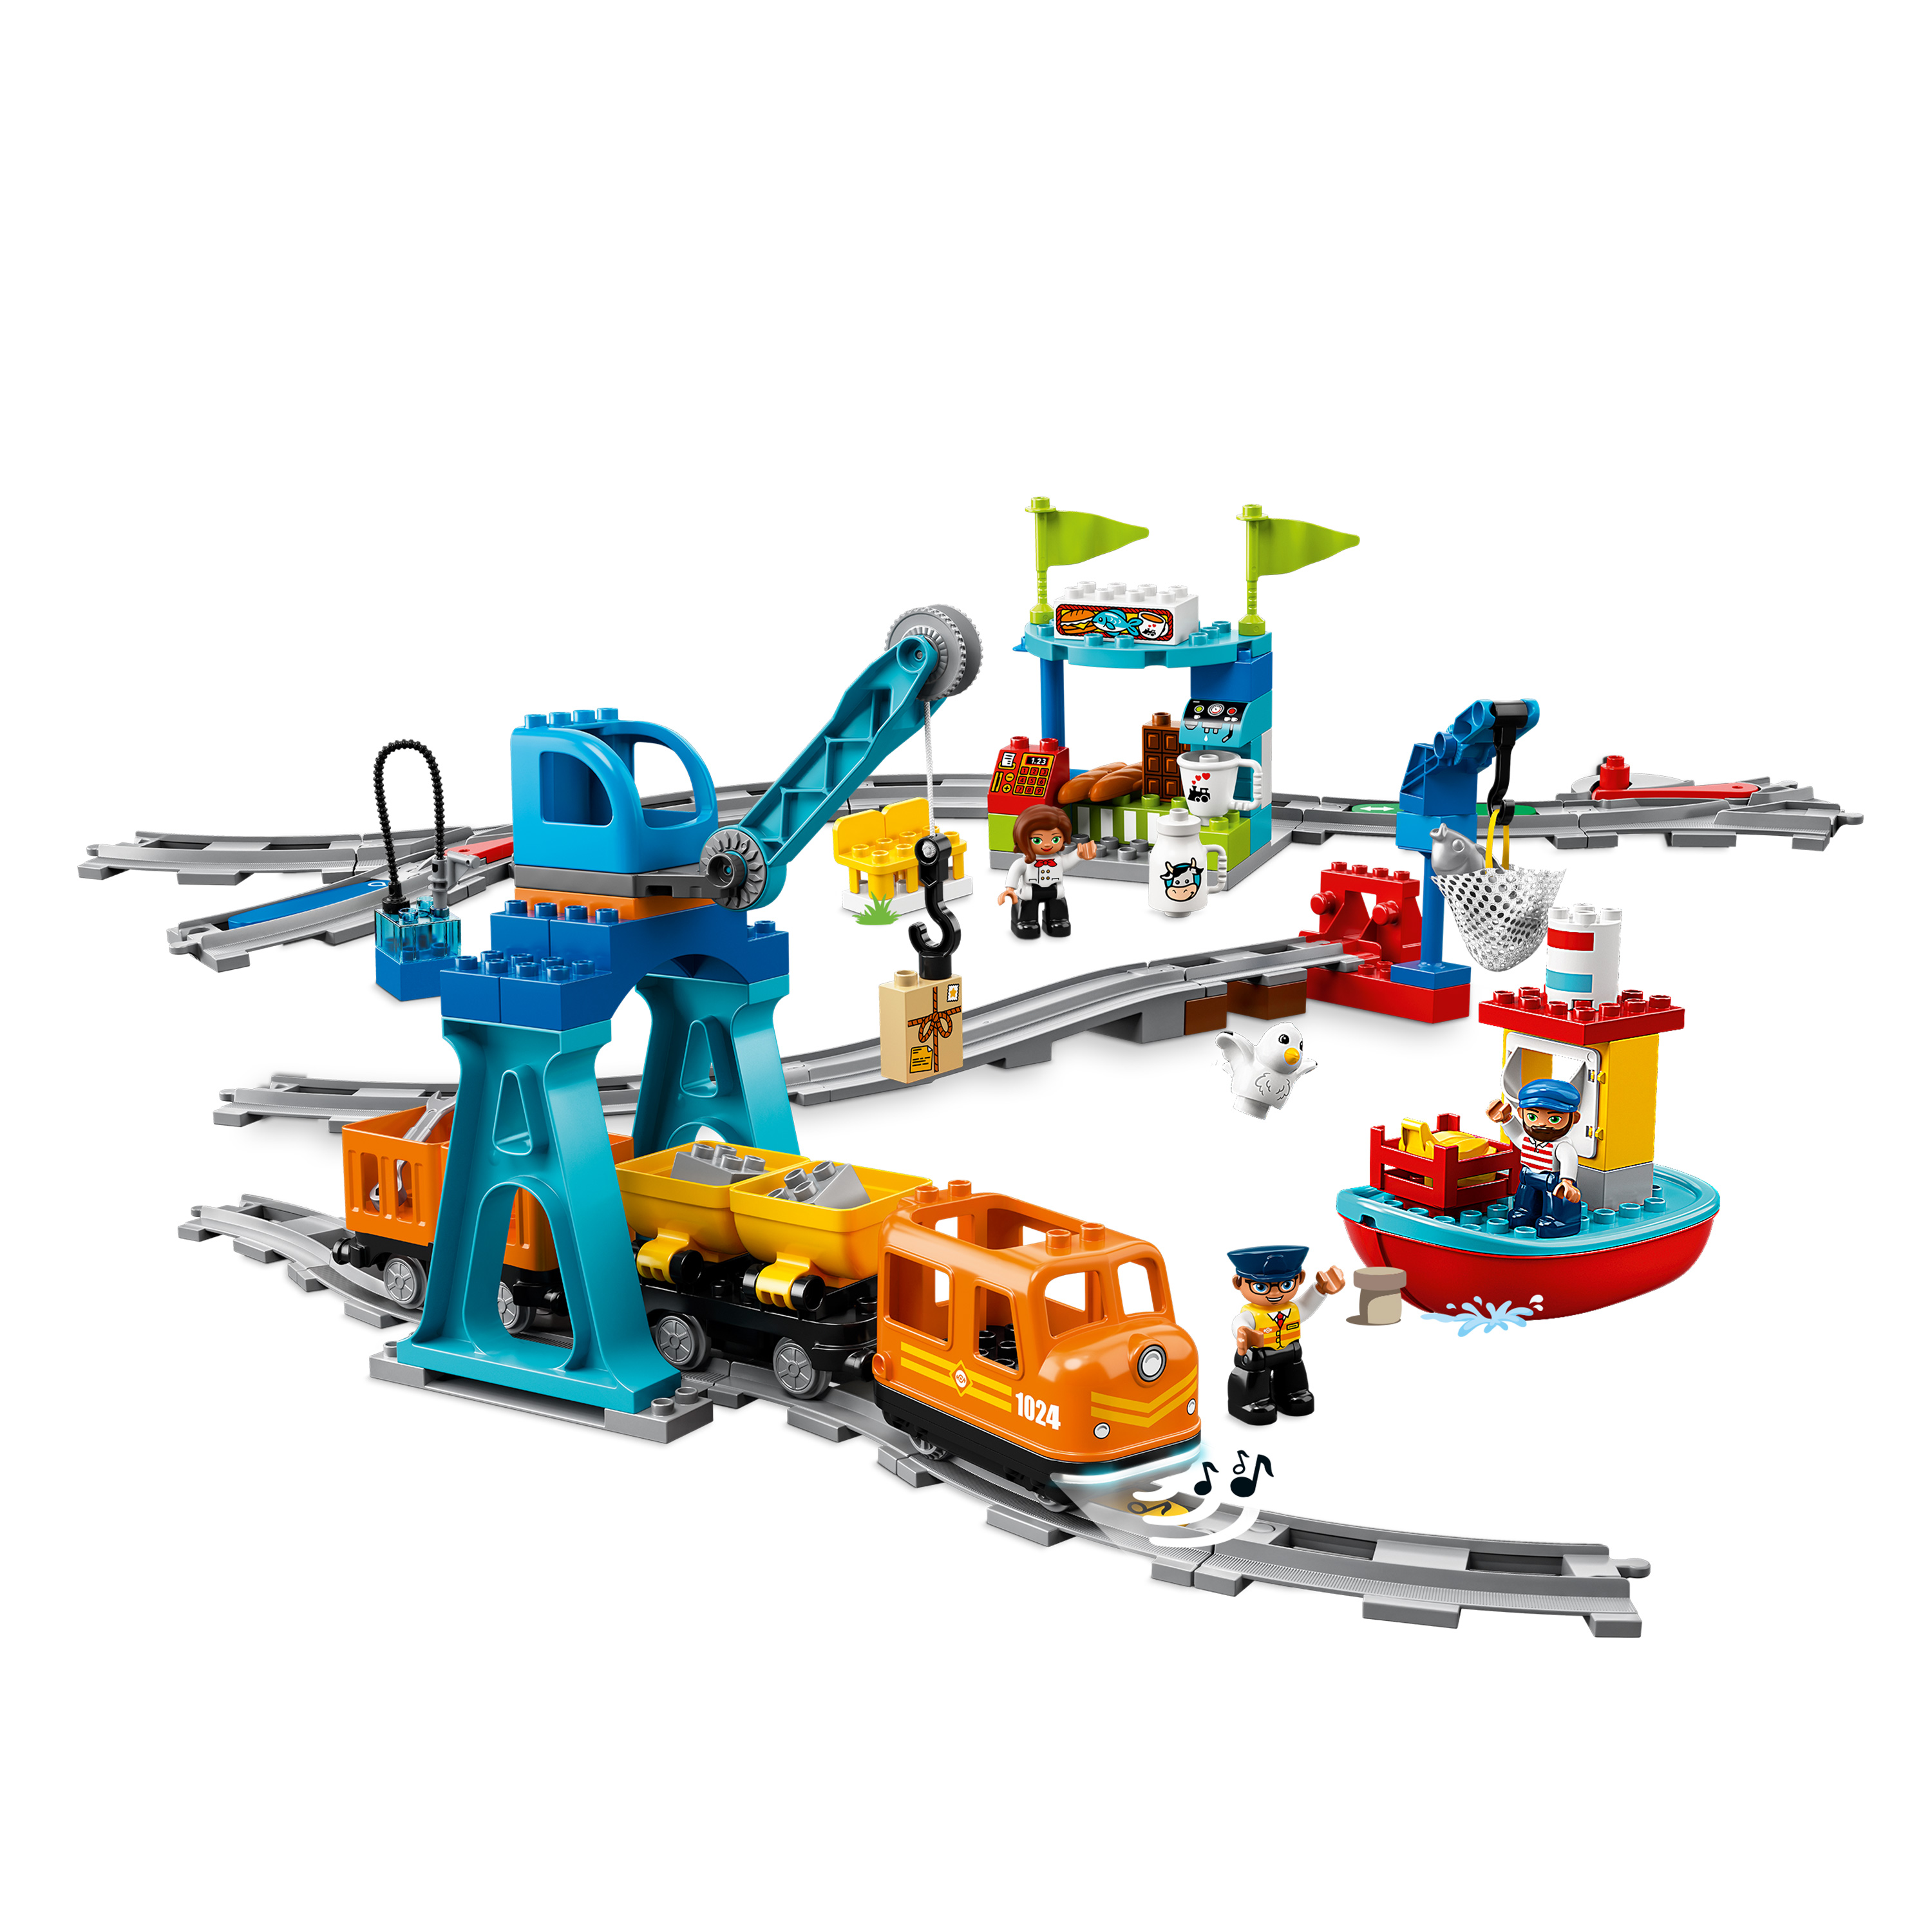 LEGO® DUPLO® 10875 Güterzug, 105 Teile